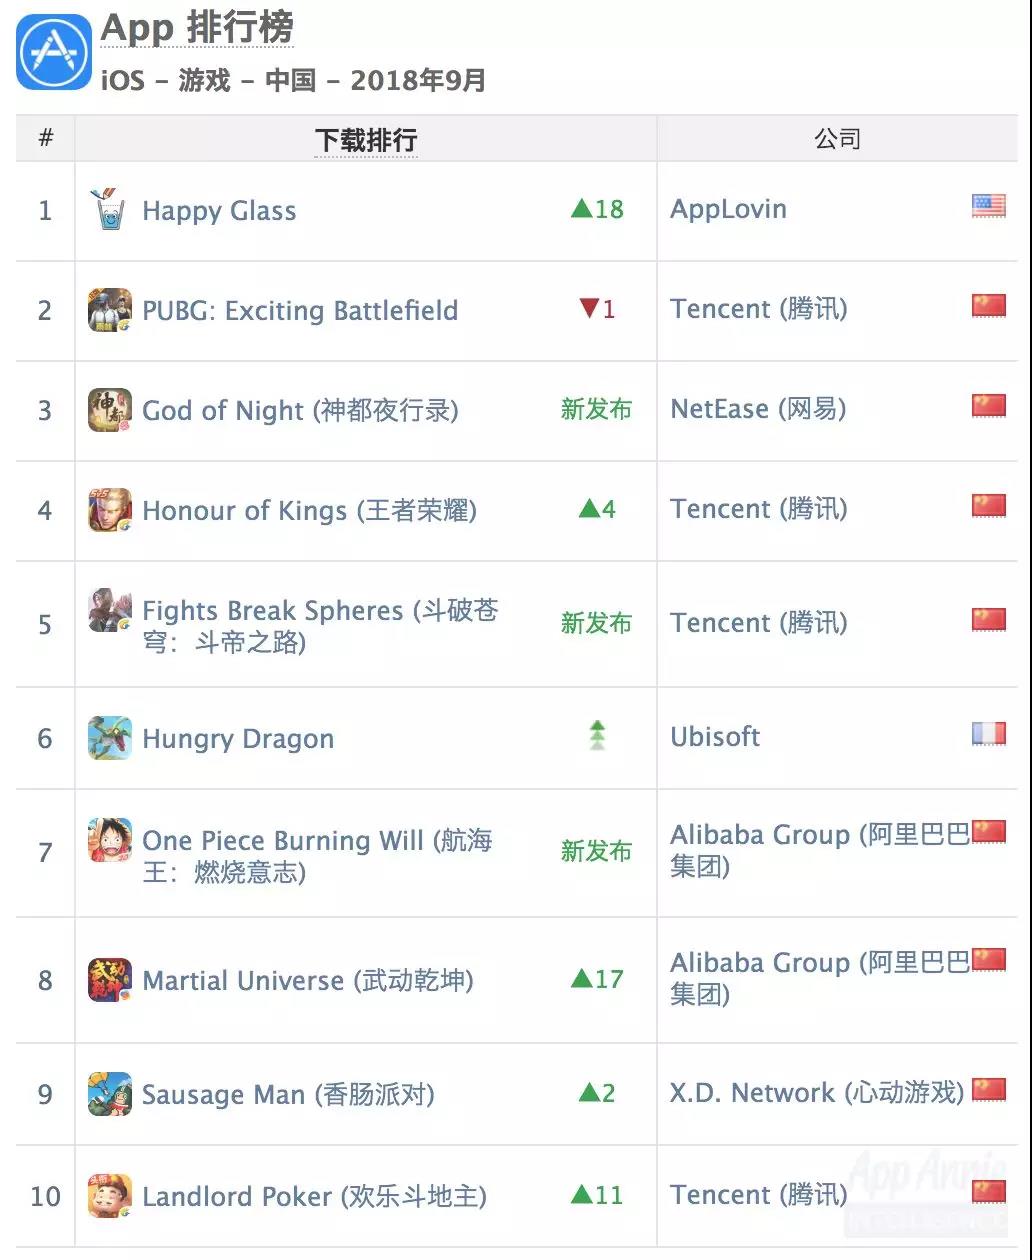 阿里2款MMO挤进iOS下载Top 10 腾讯网易继续瓜分收入榜